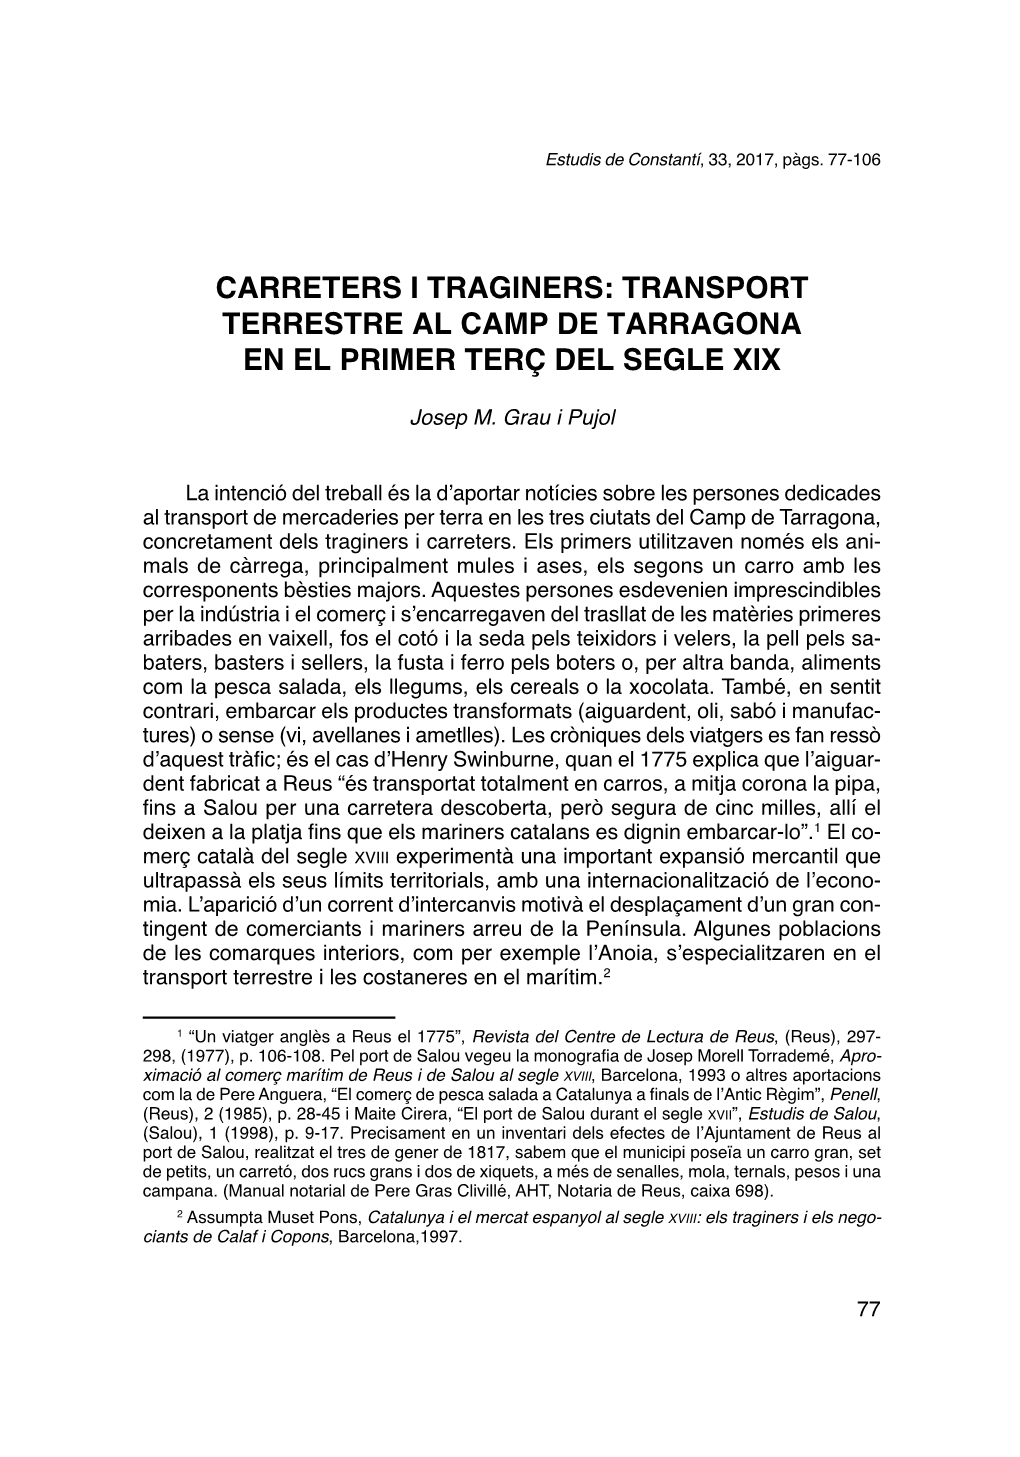 Carreters I Traginers: Transport Terrestre Al Camp De Tarragona En El Primer Terç Del Segle Xix